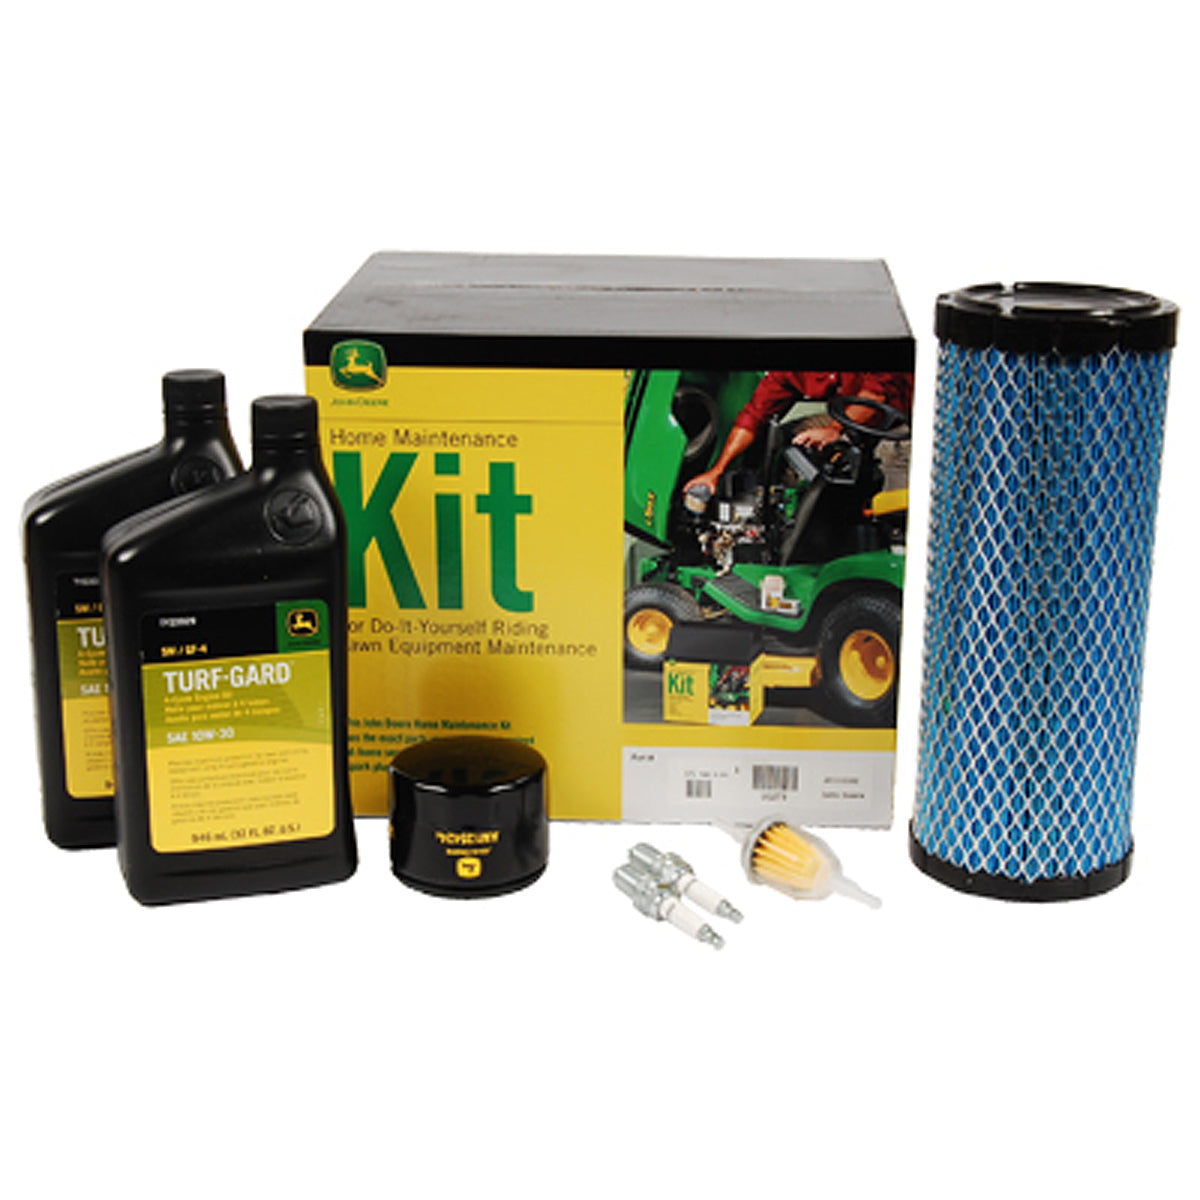 John Deere Home Maintenance Kit for Gator Utility Vehicles